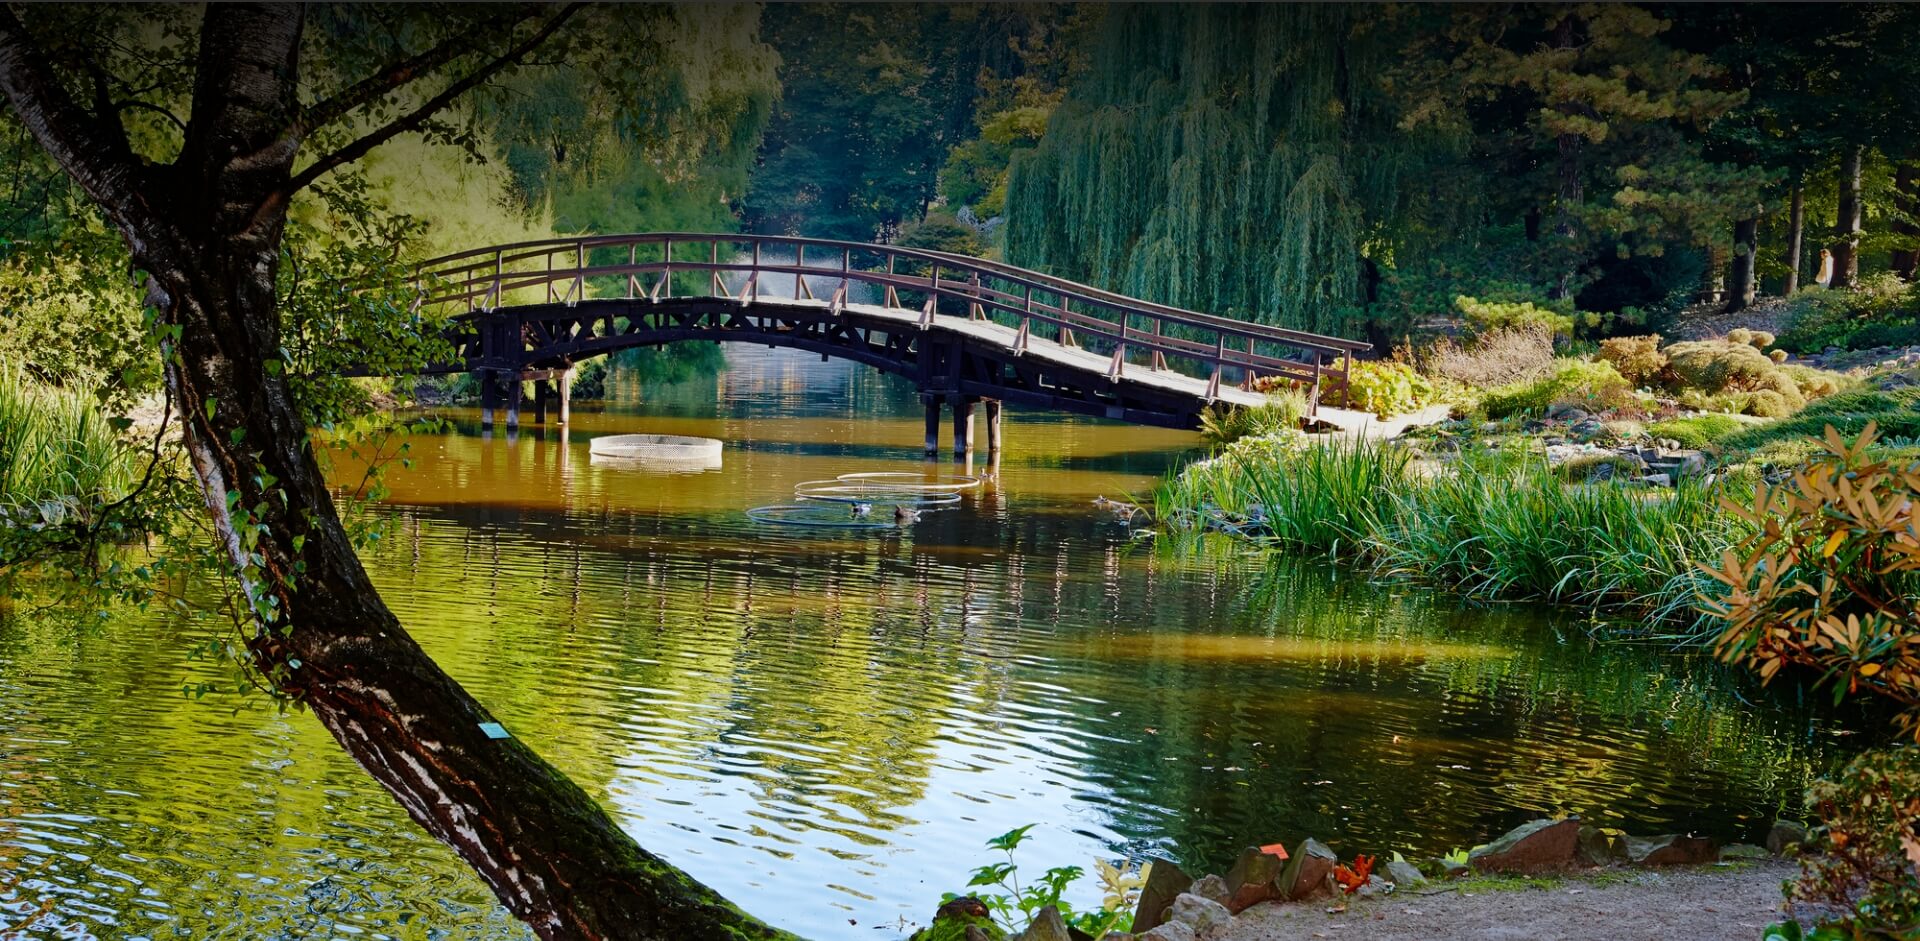 Beautiful bridge scene